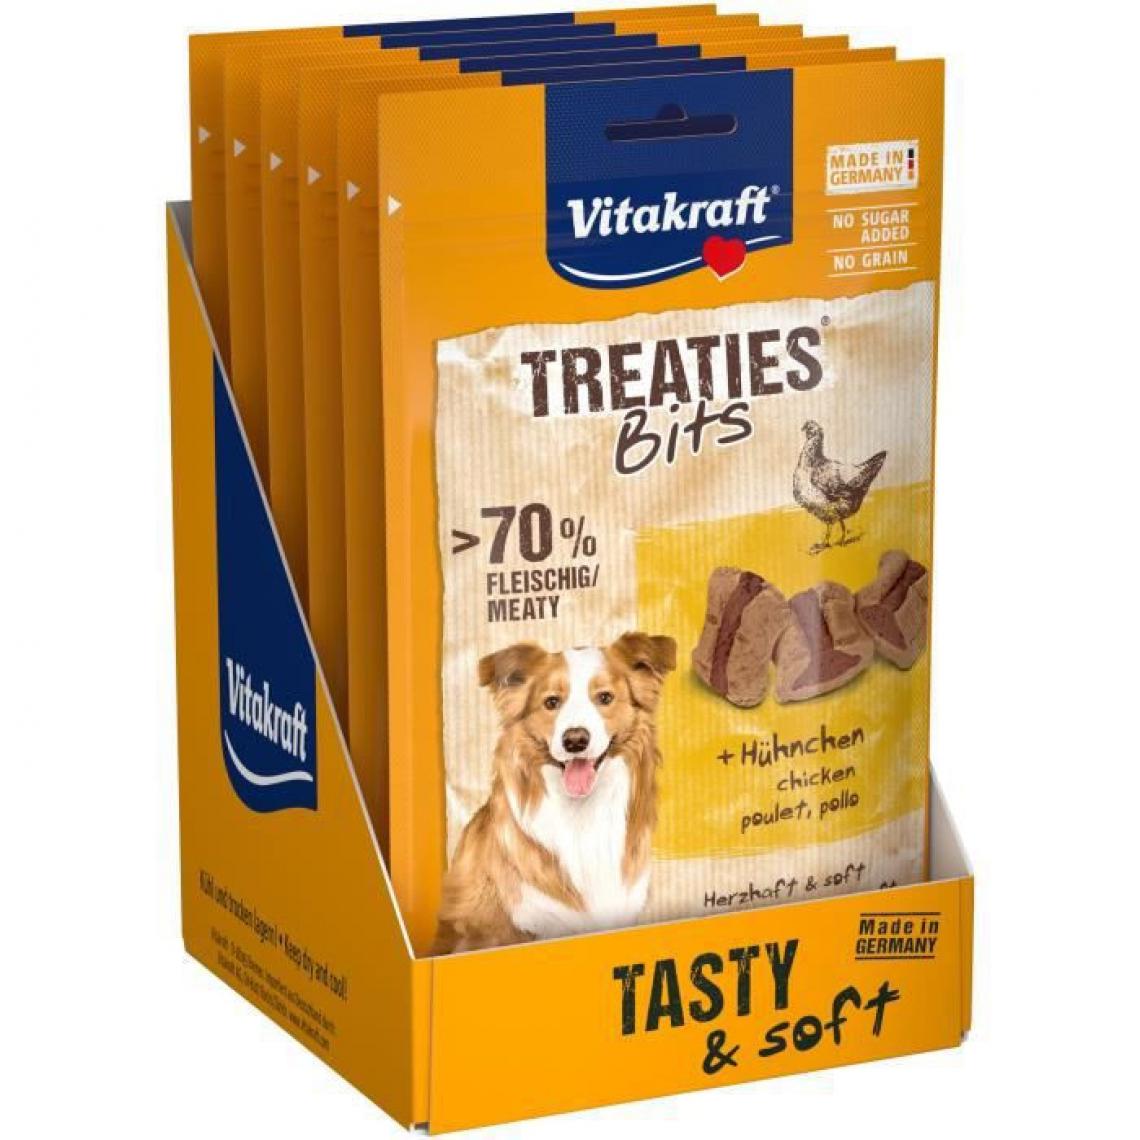 Vitakraft - VITAKRAFT Treaties Bits Friandise pour chien au Poulet - Lot de 6 sachets de 120g - Croquettes pour chien